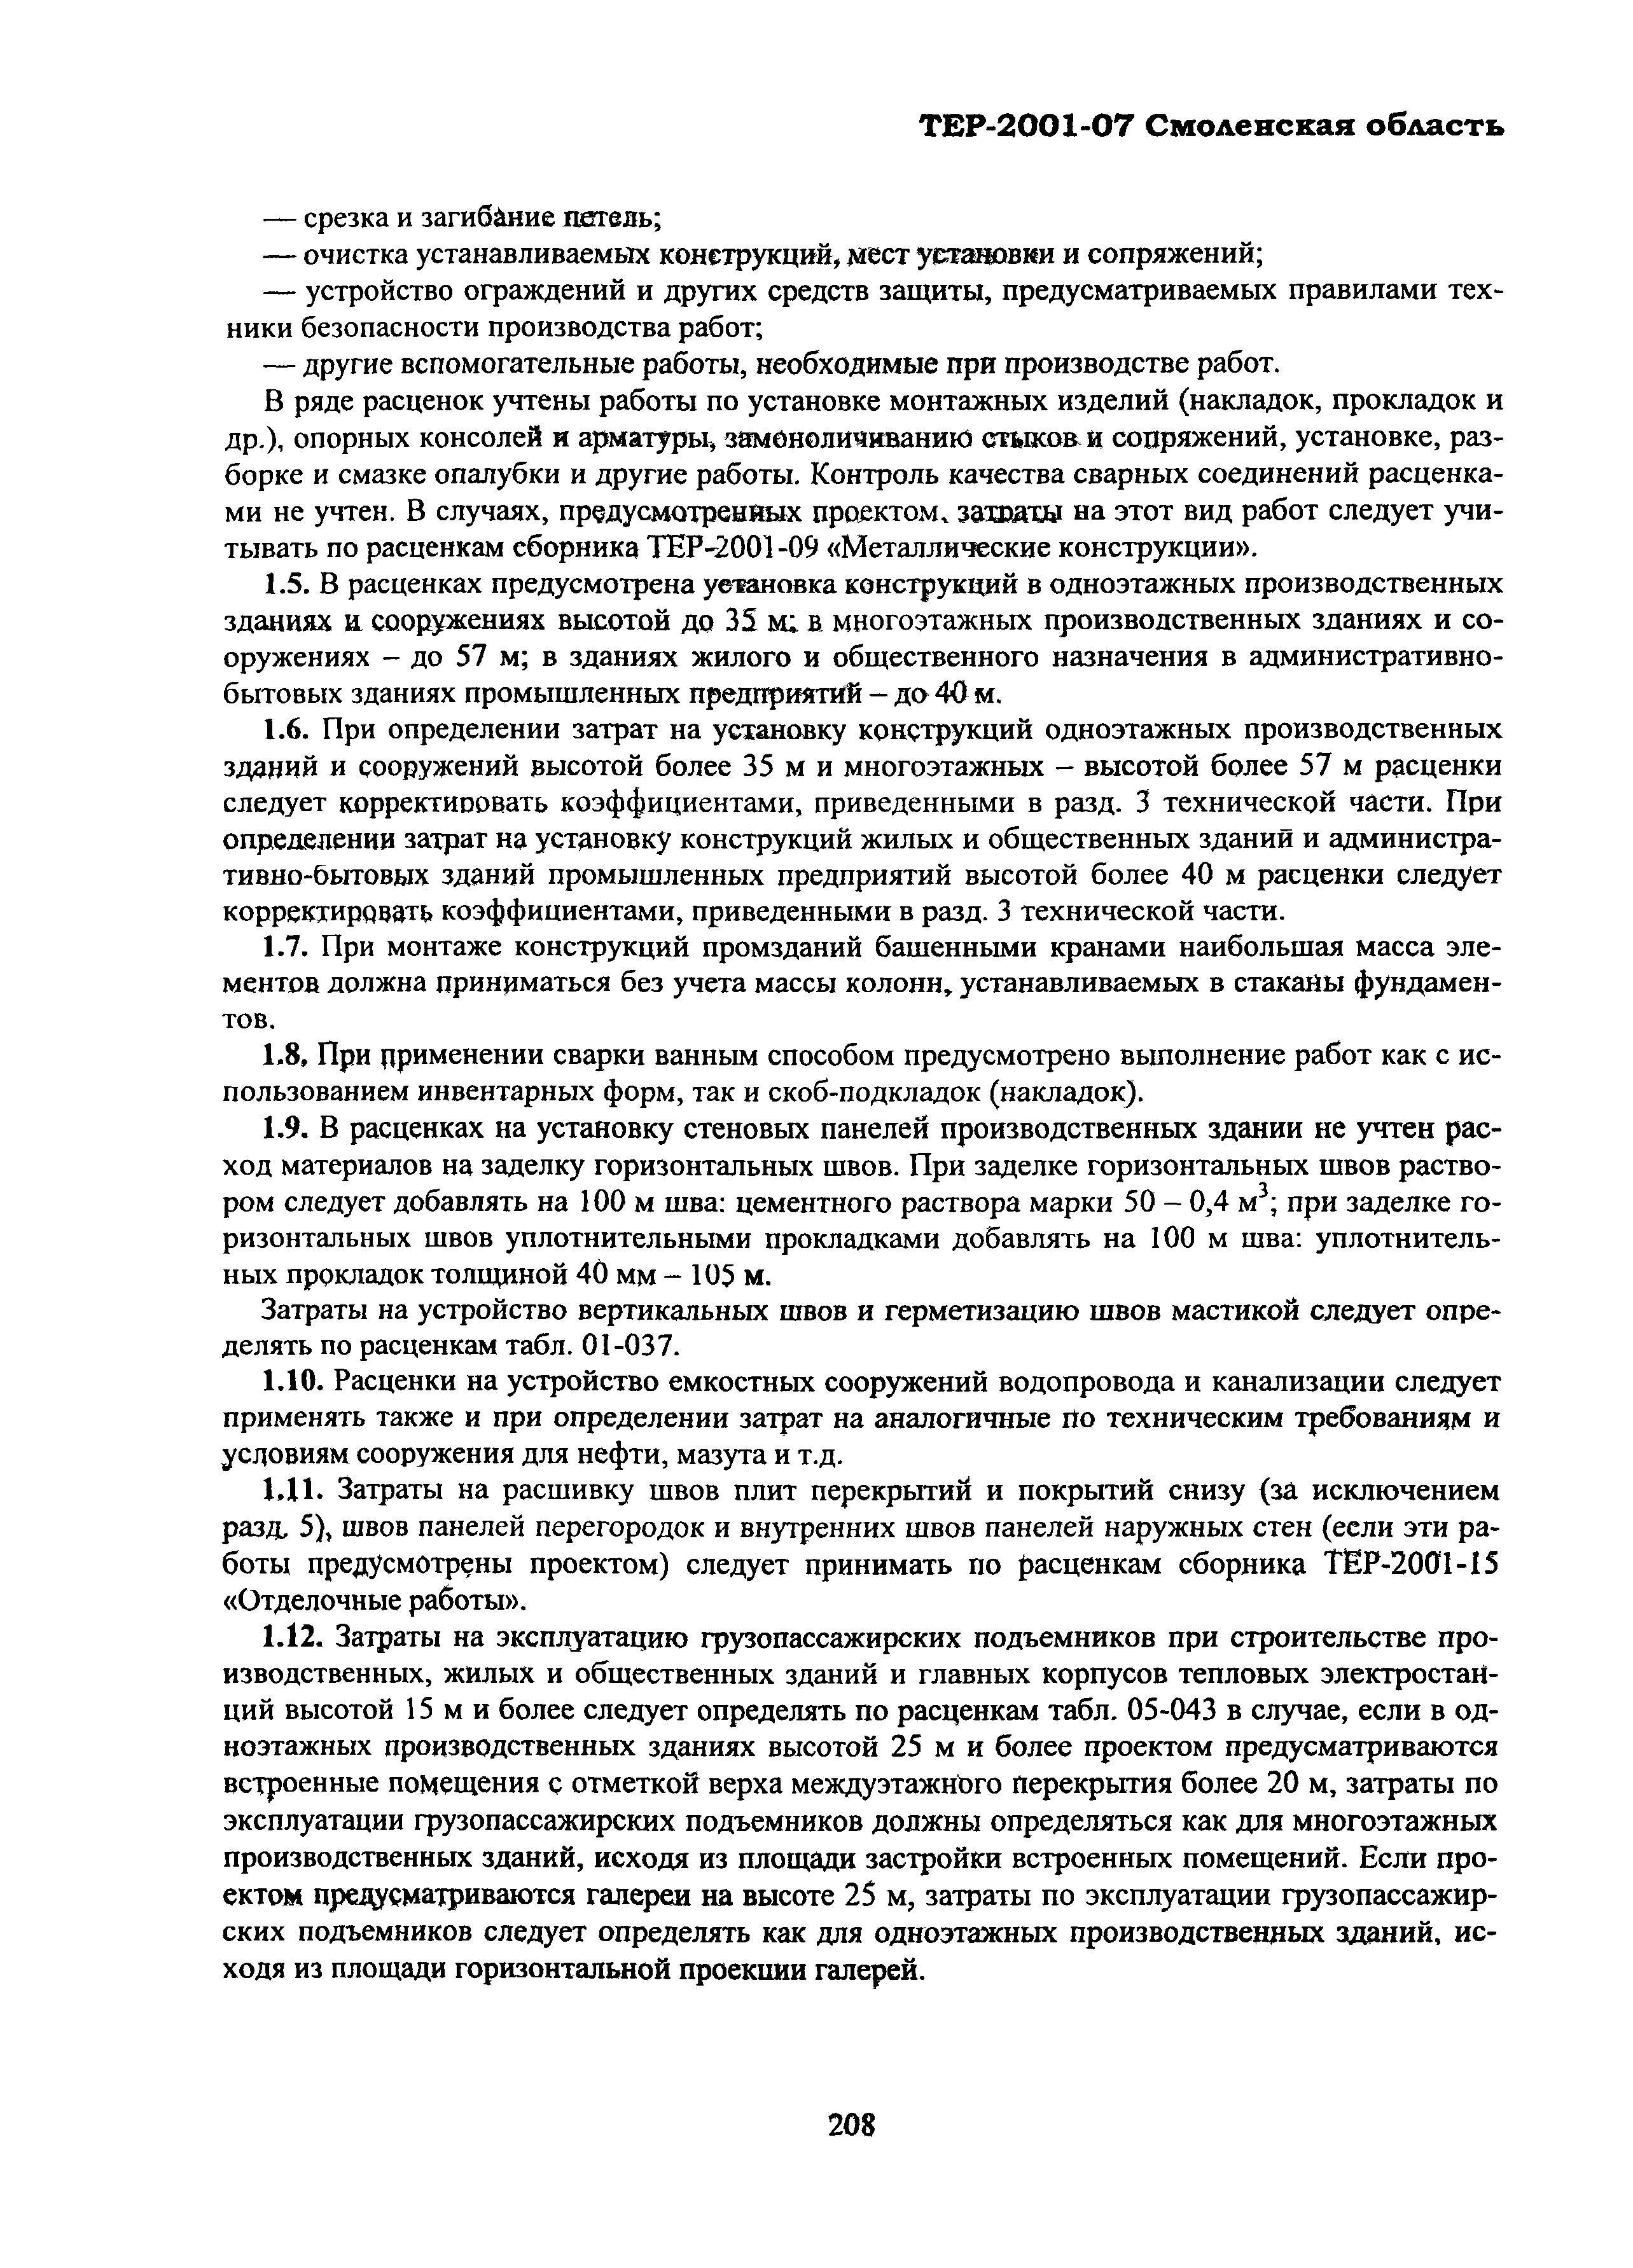 ТЕР Смоленской обл. 2001-07